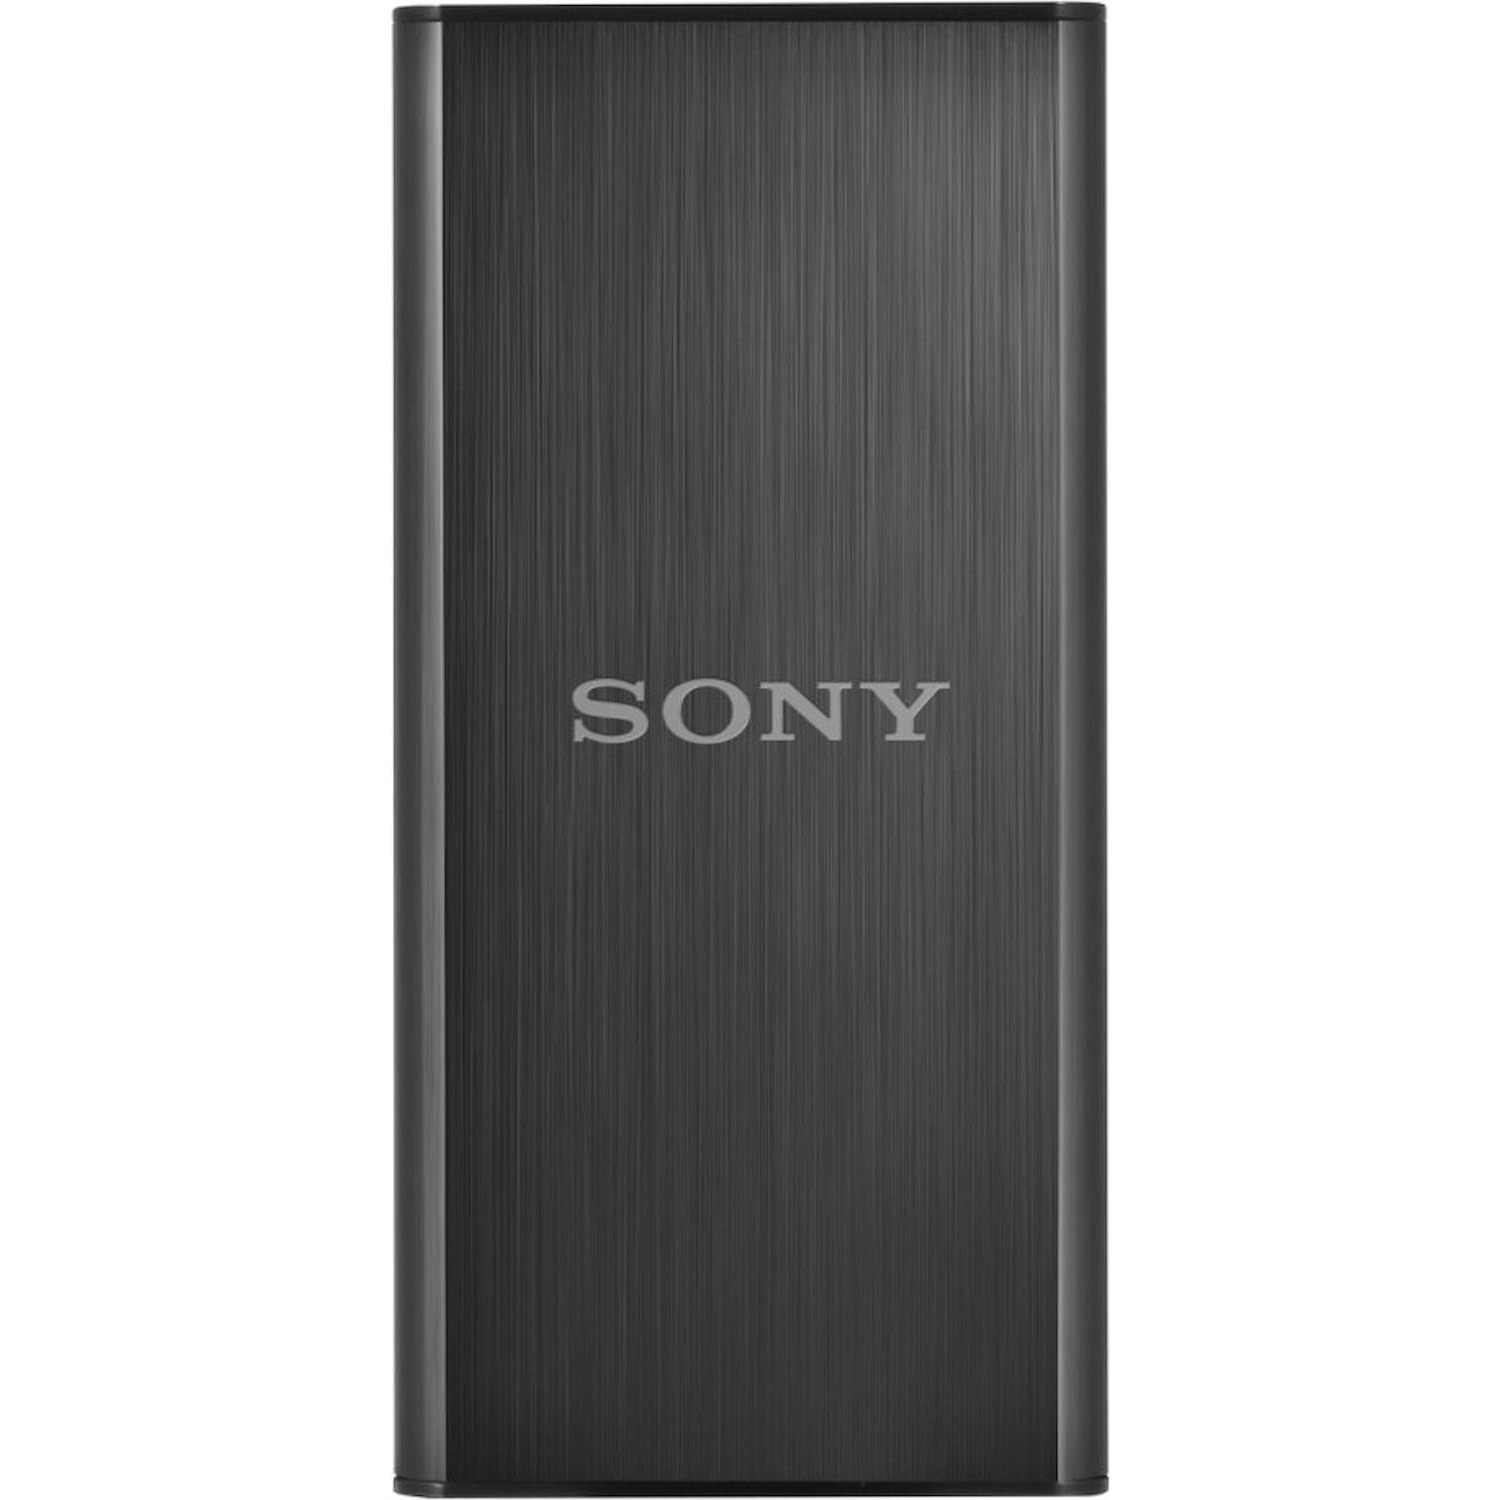 Immagine per HD SSD Sony 128GB esterno 3.0 nero da DIMOStore